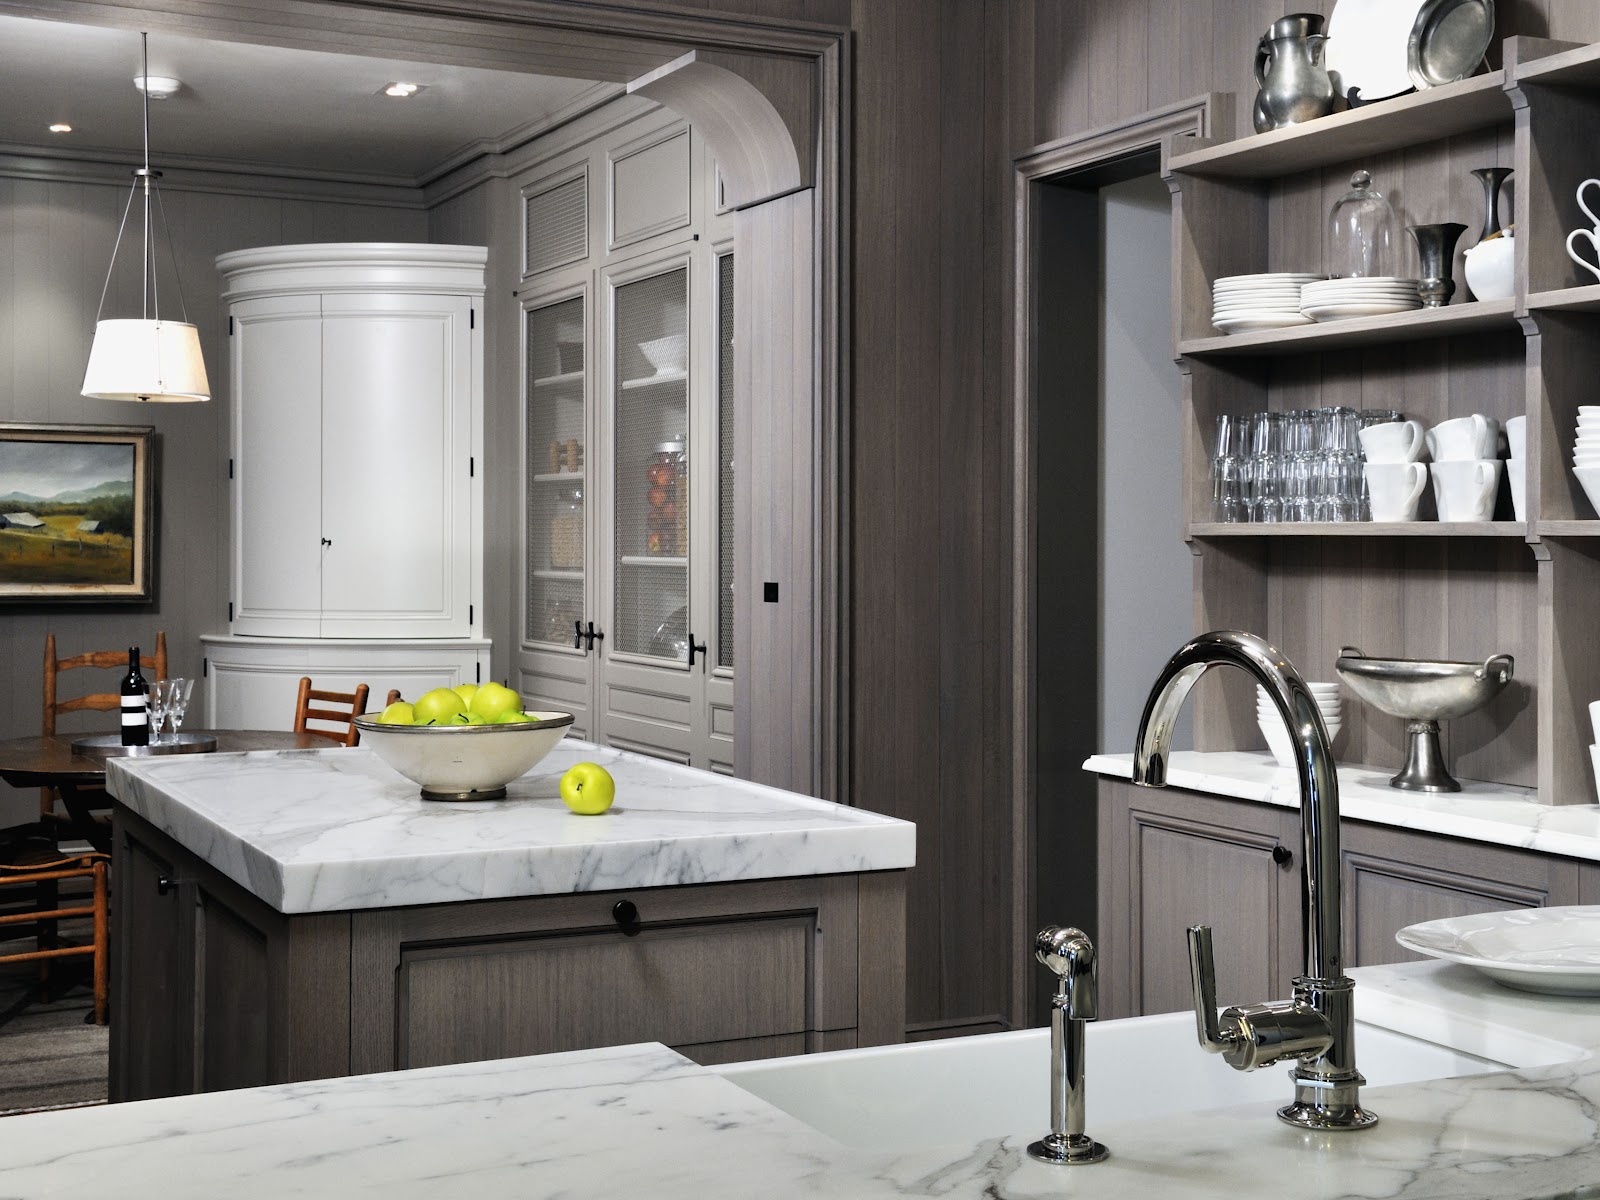  Grey  wash kitchen  cabinets  home design ideas